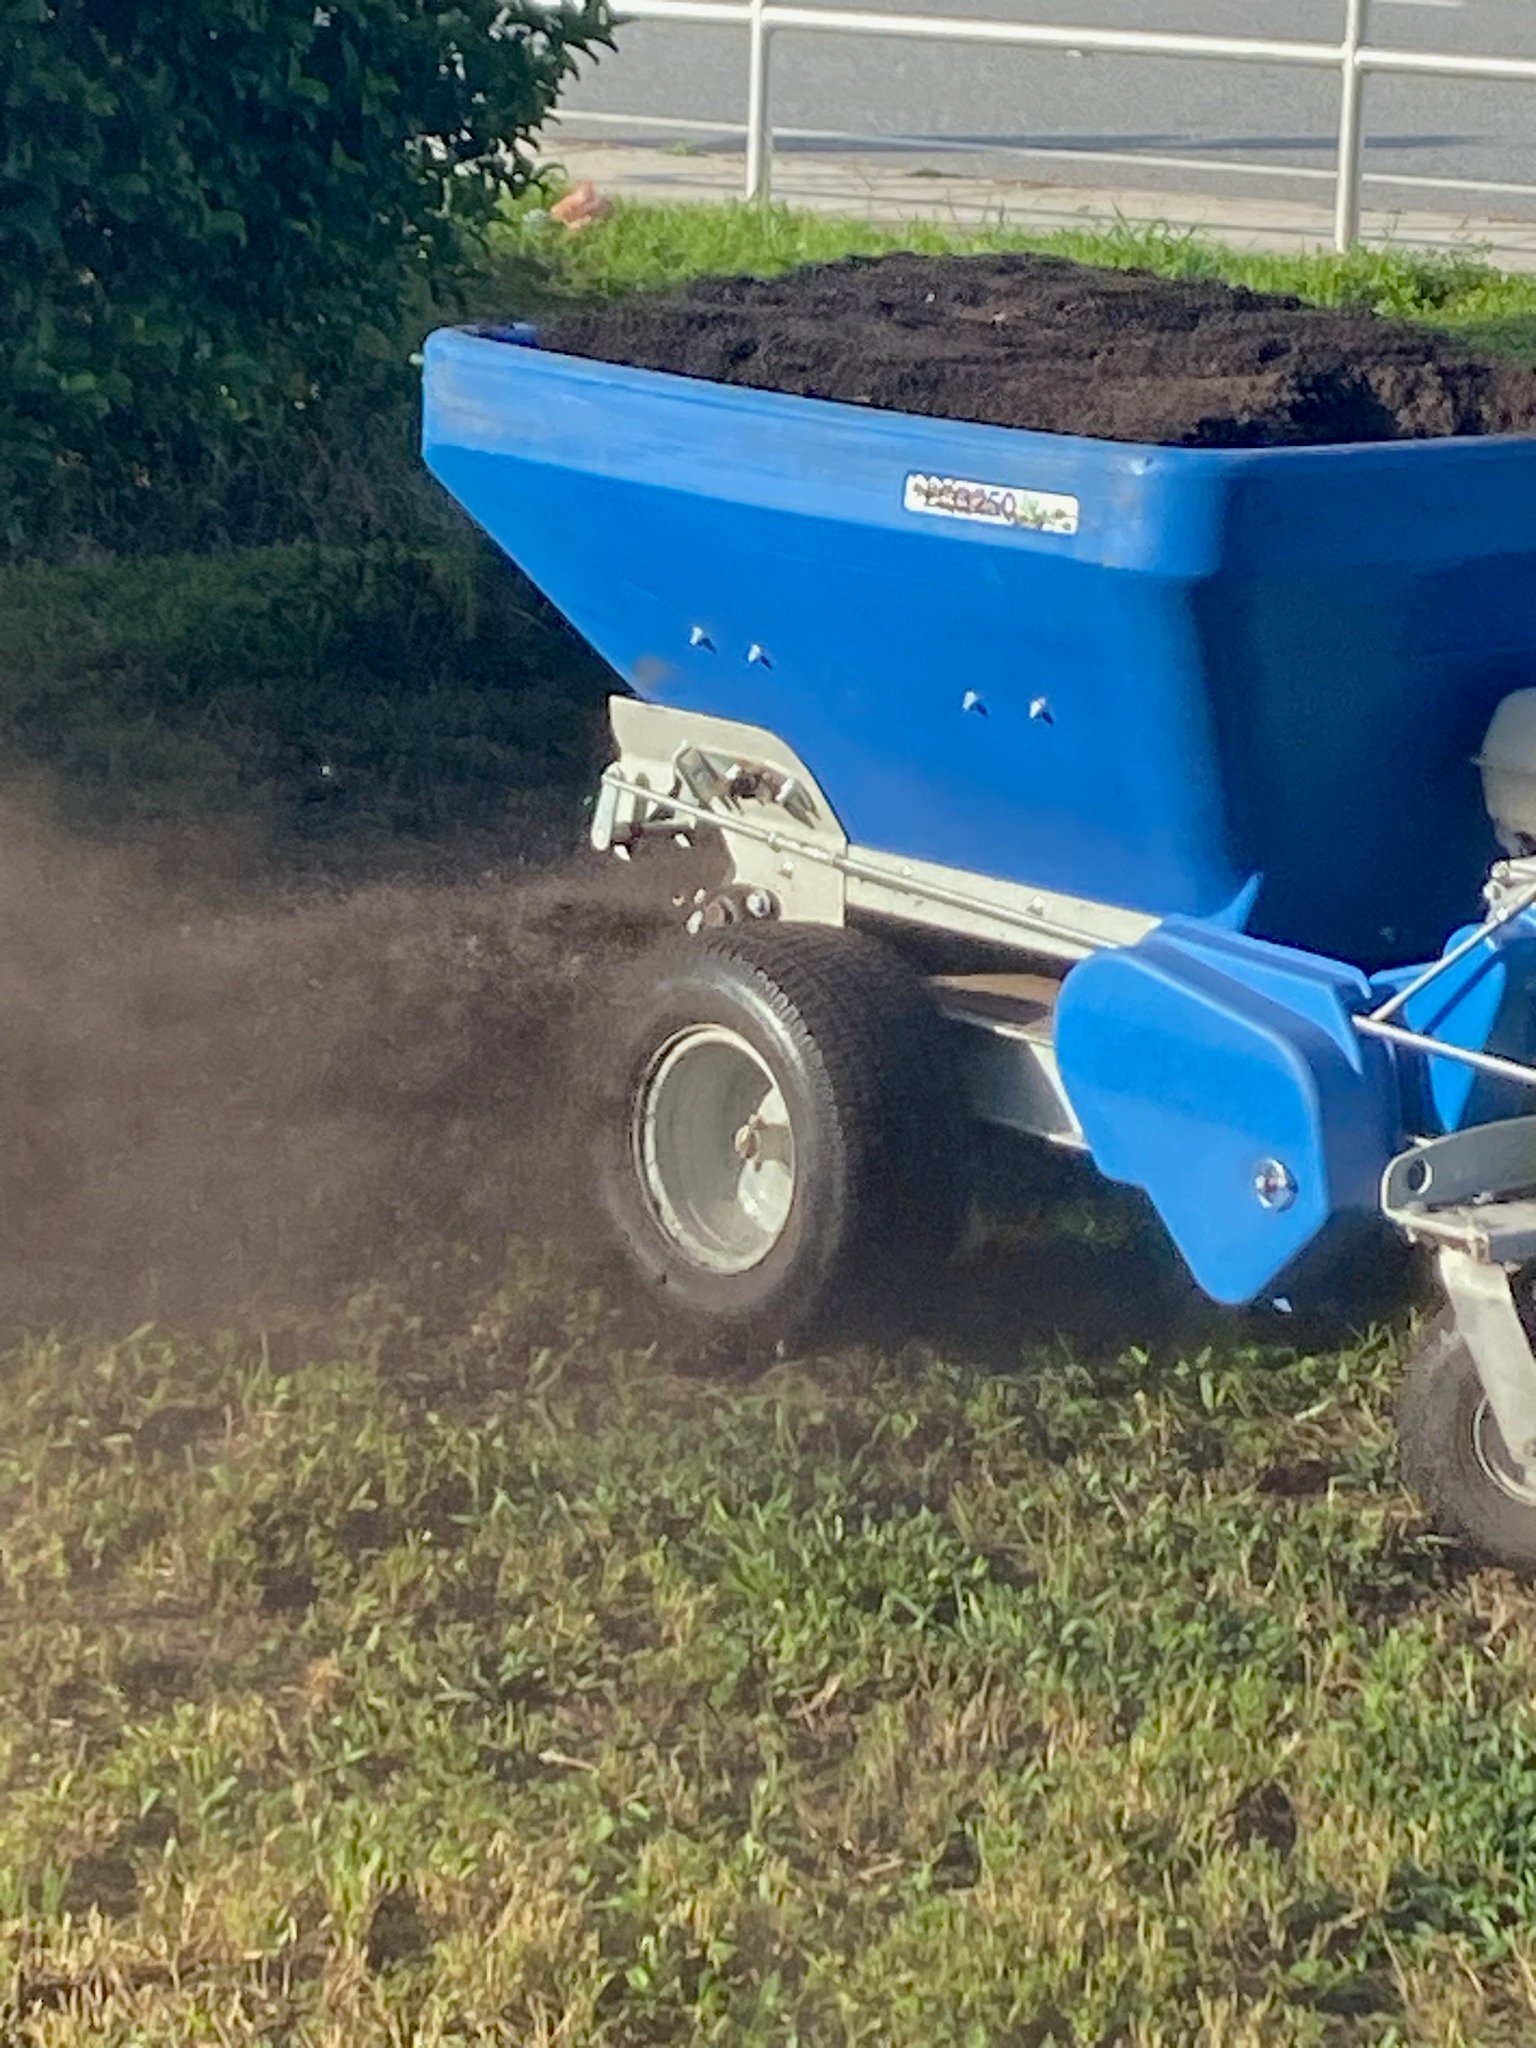 sod topdressing machine spreading soil amendments on sod lawn